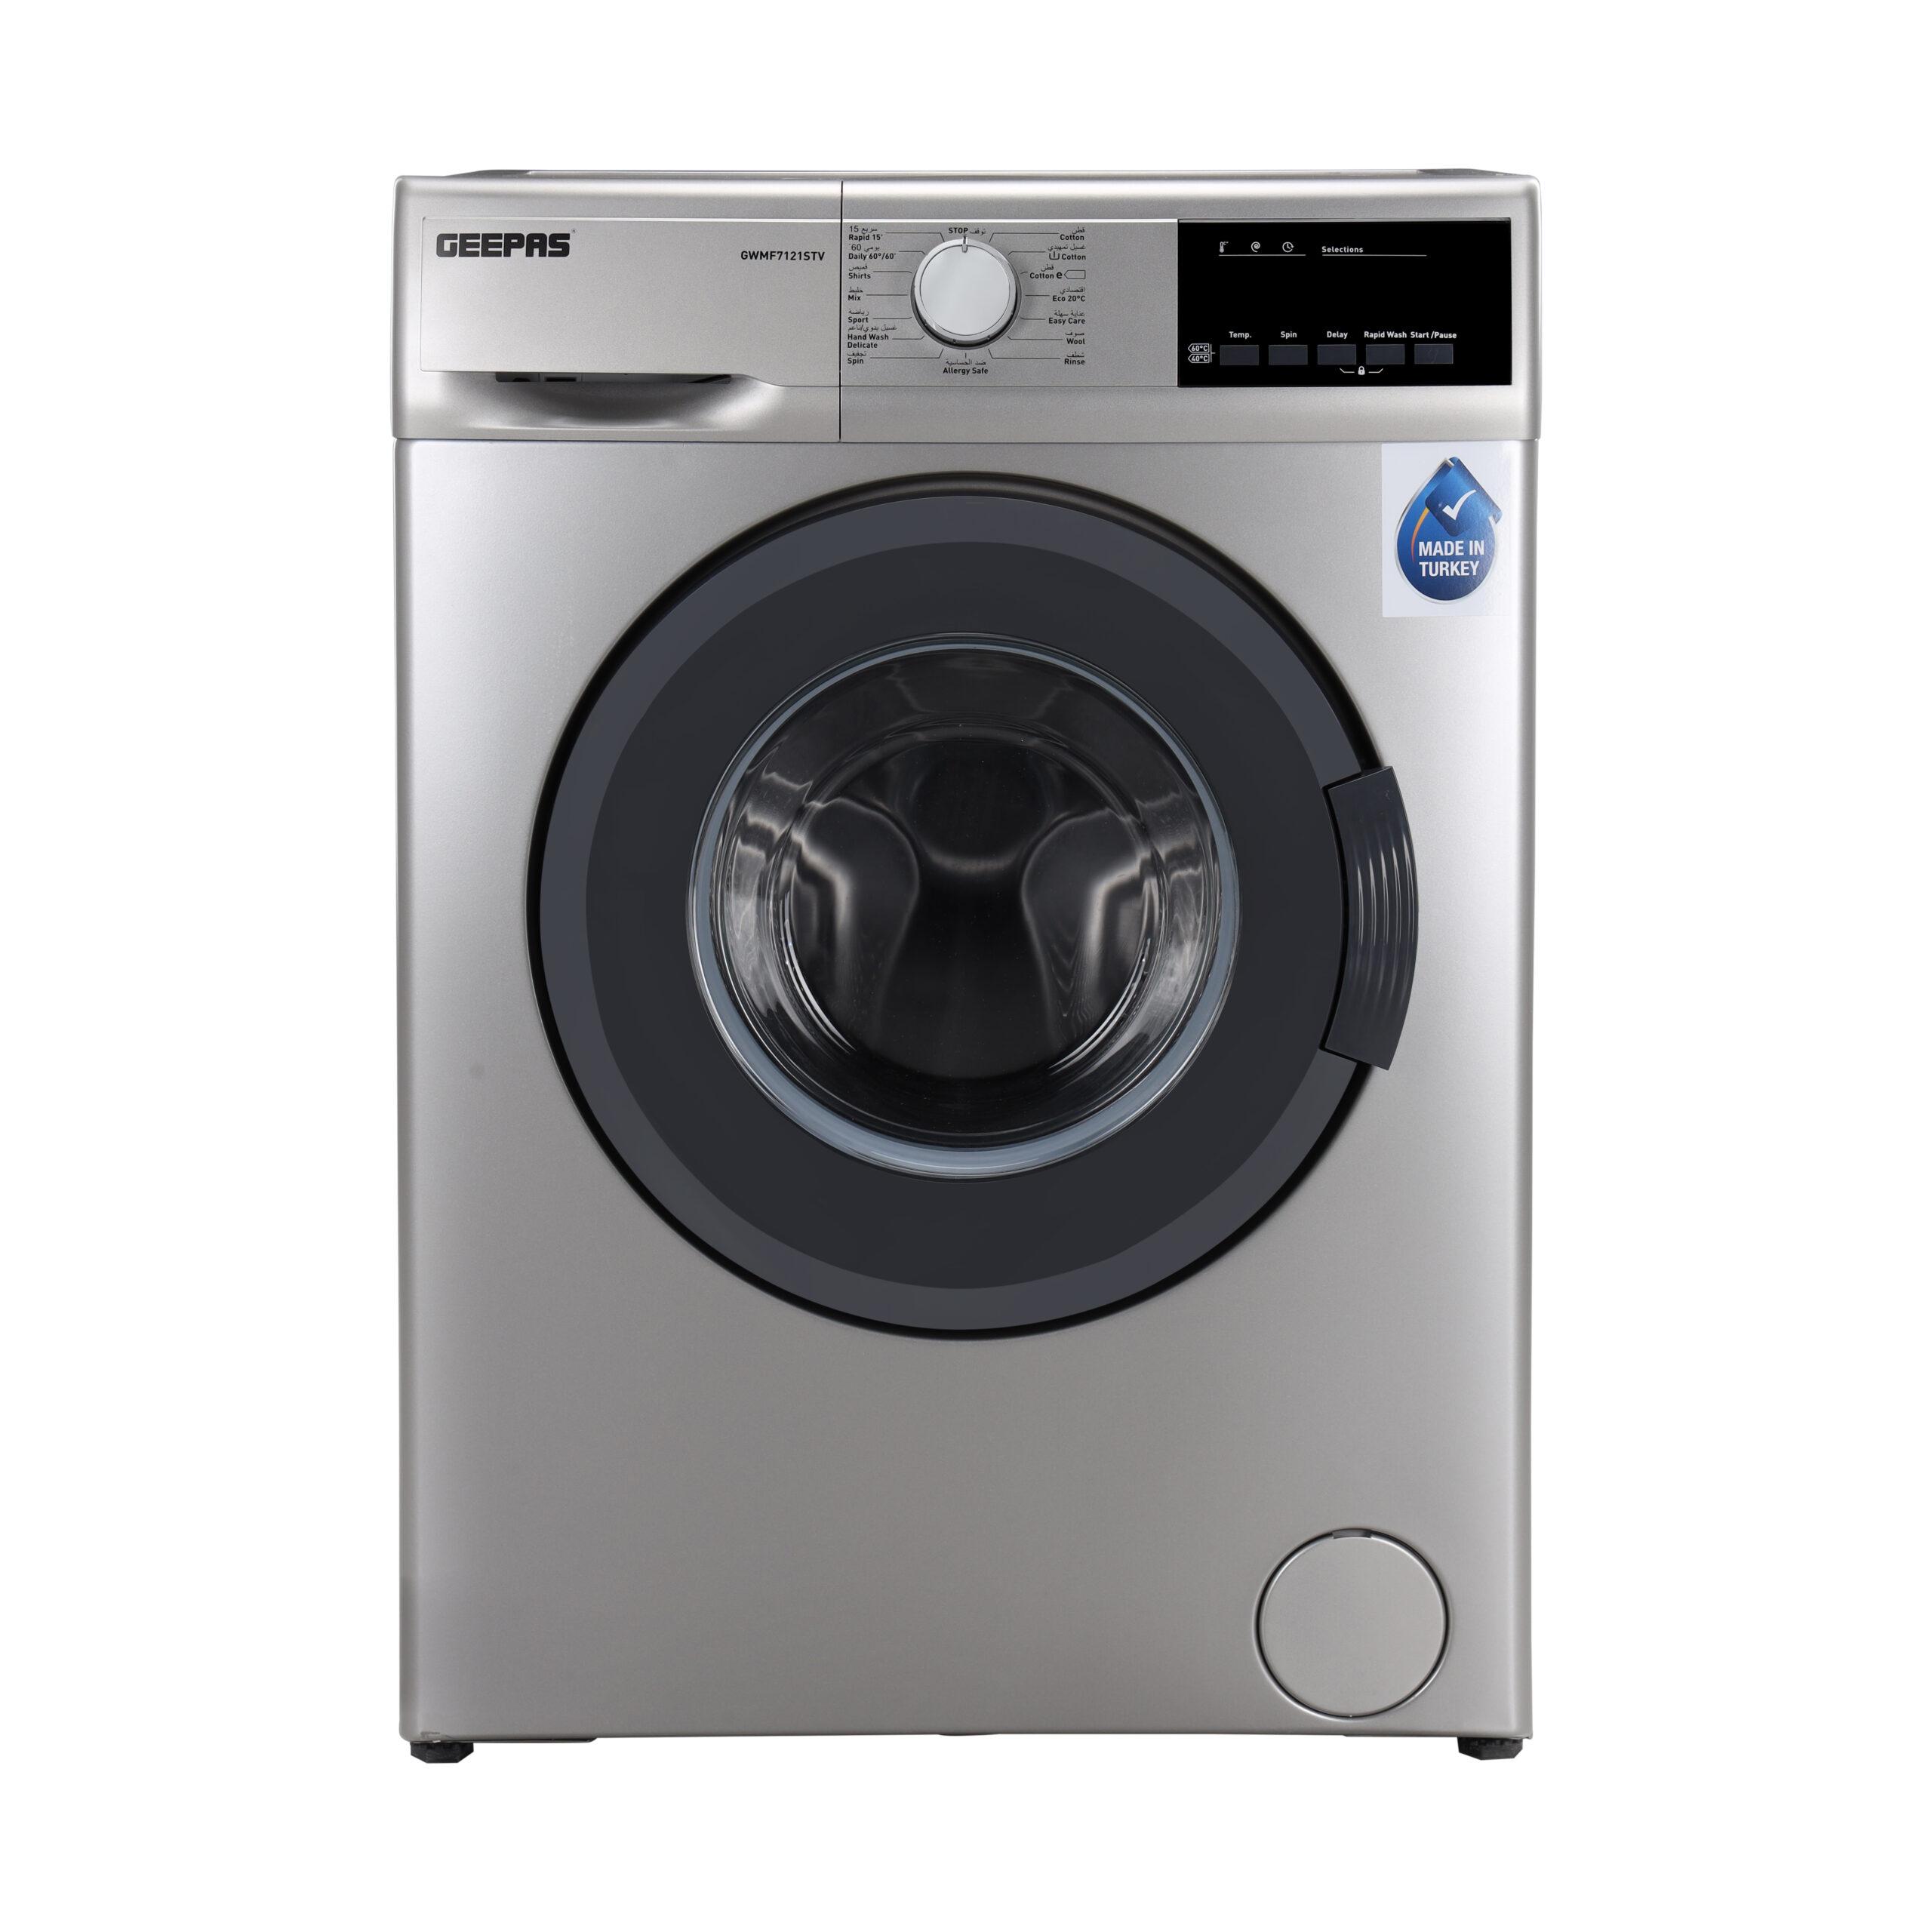 غسالة جيباس أوتوماتيكية بسعة 7 كيلو  Fully Automatic Washing Machine - Geepas (1000 RPM))